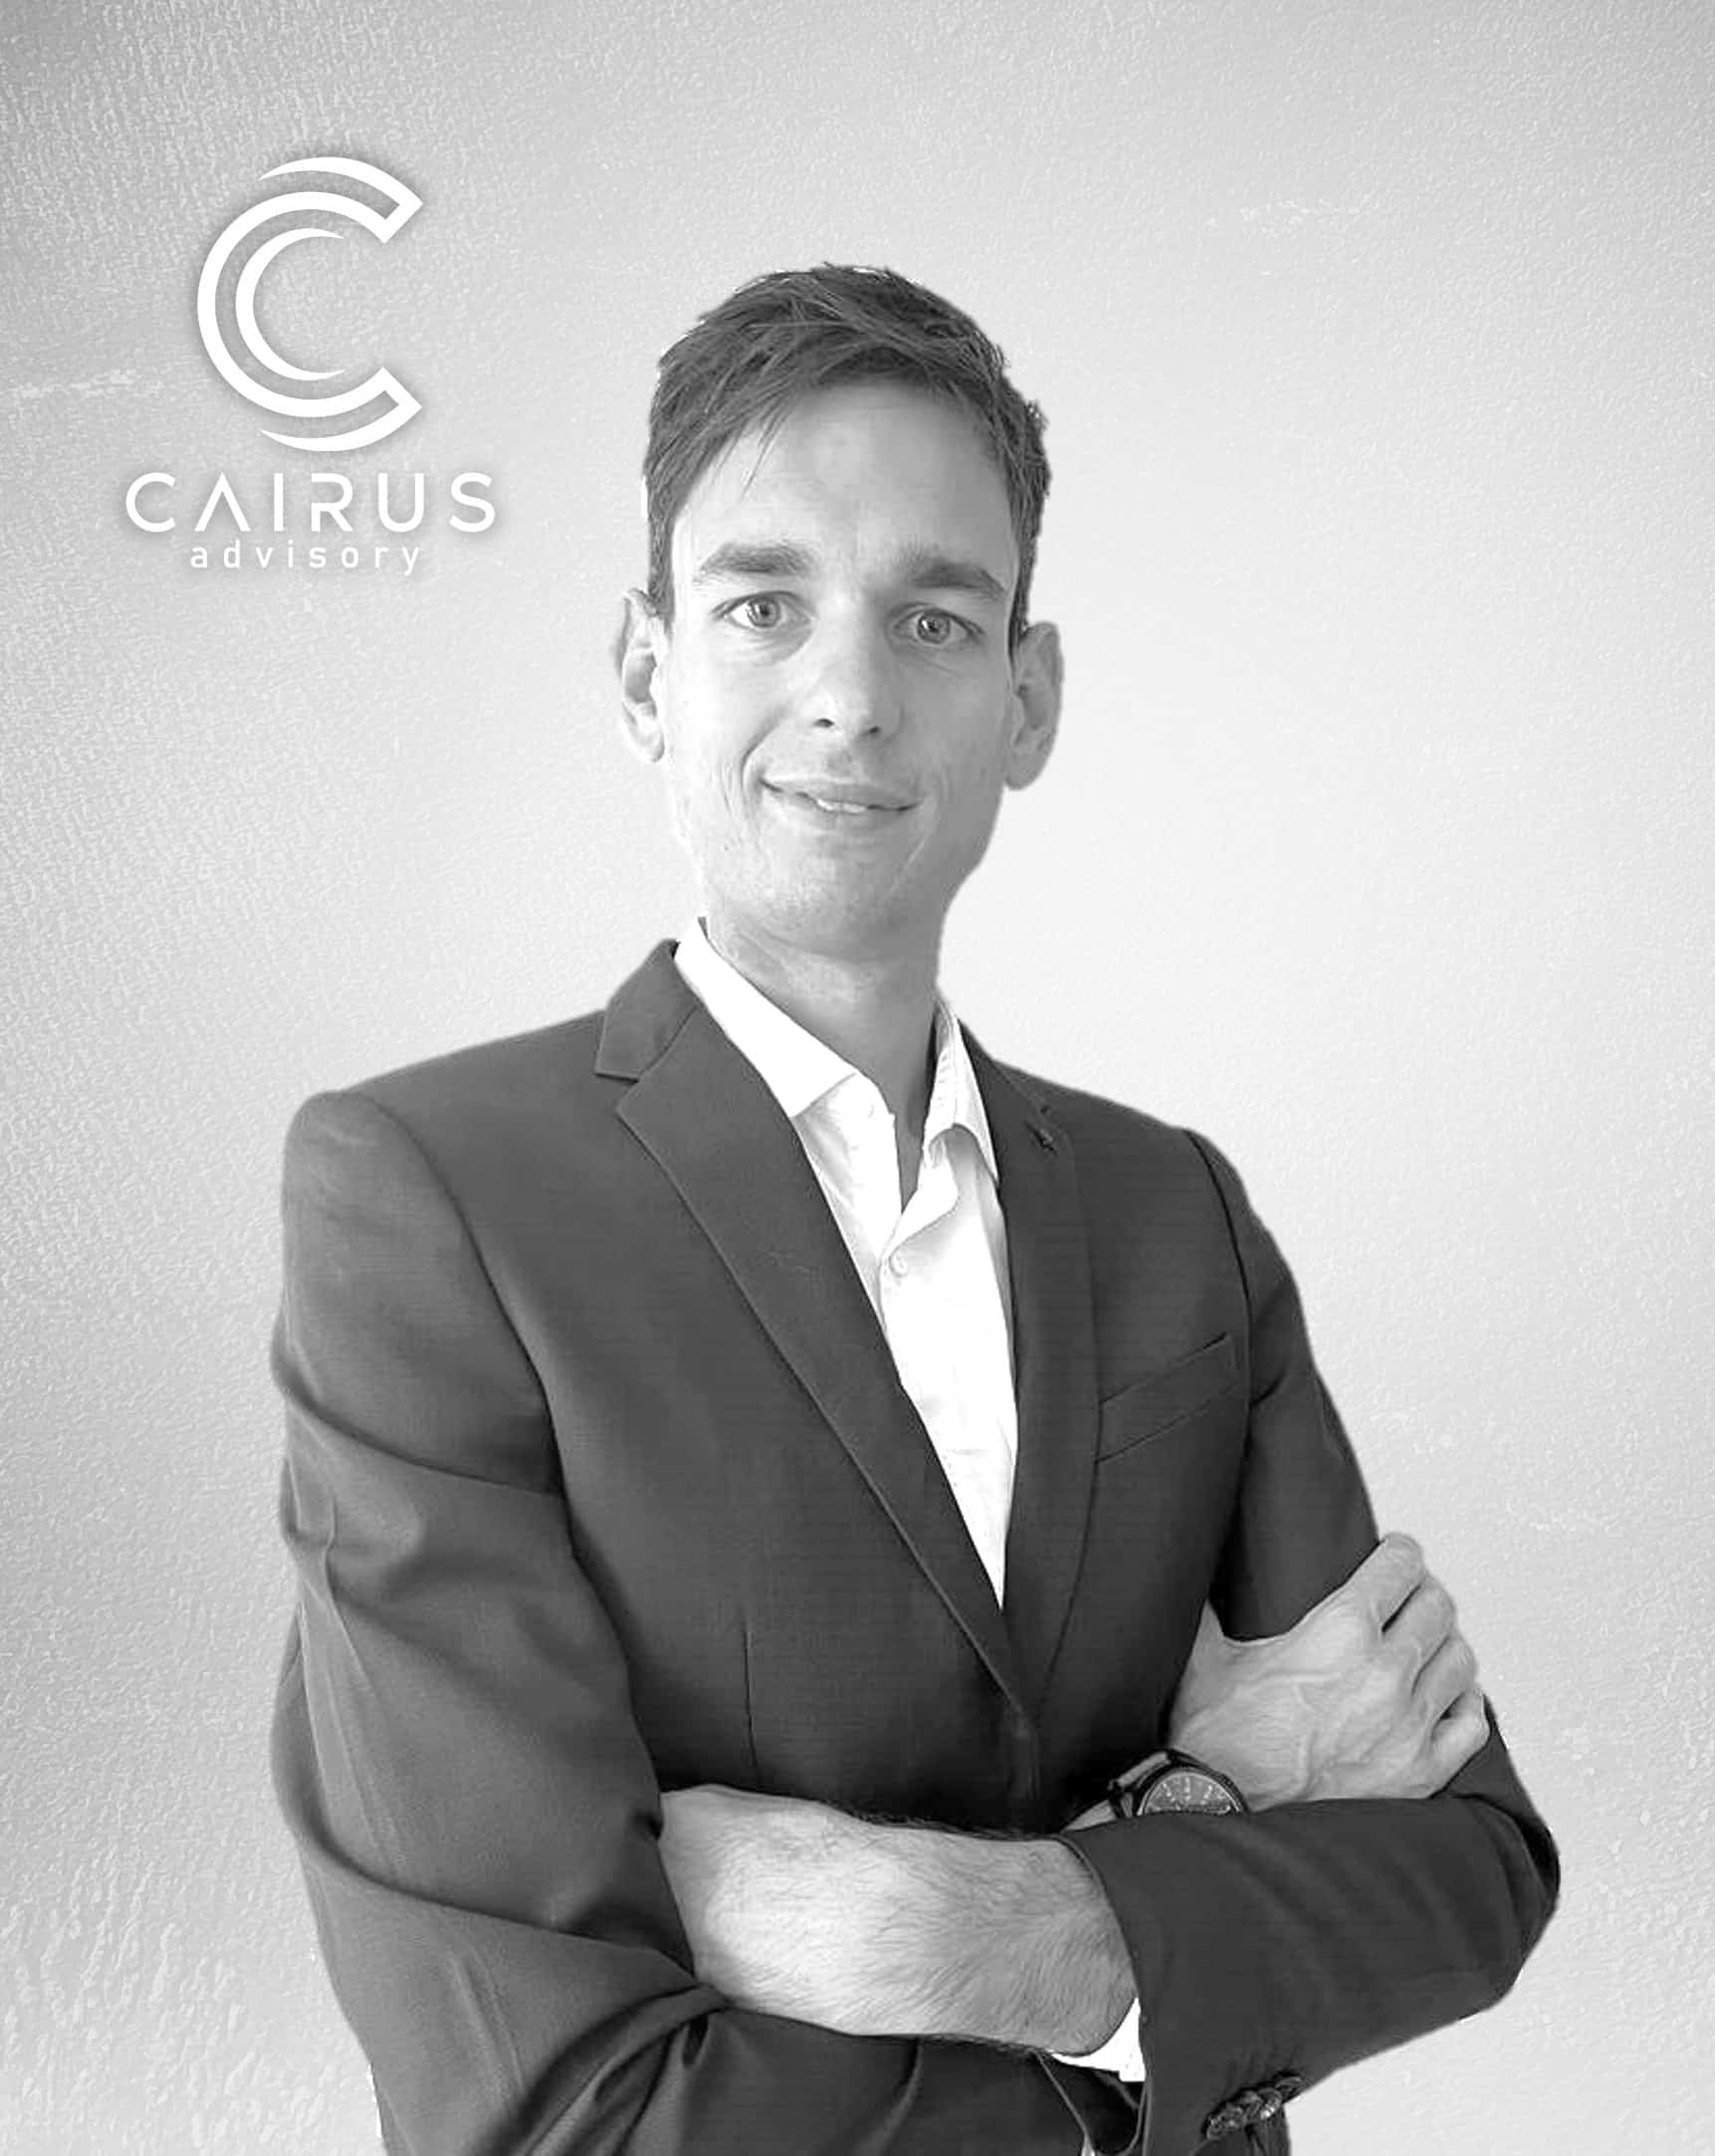 photographie de Hugo ROMANO, Chargé d'affaires M&A chez Cairus Advisory